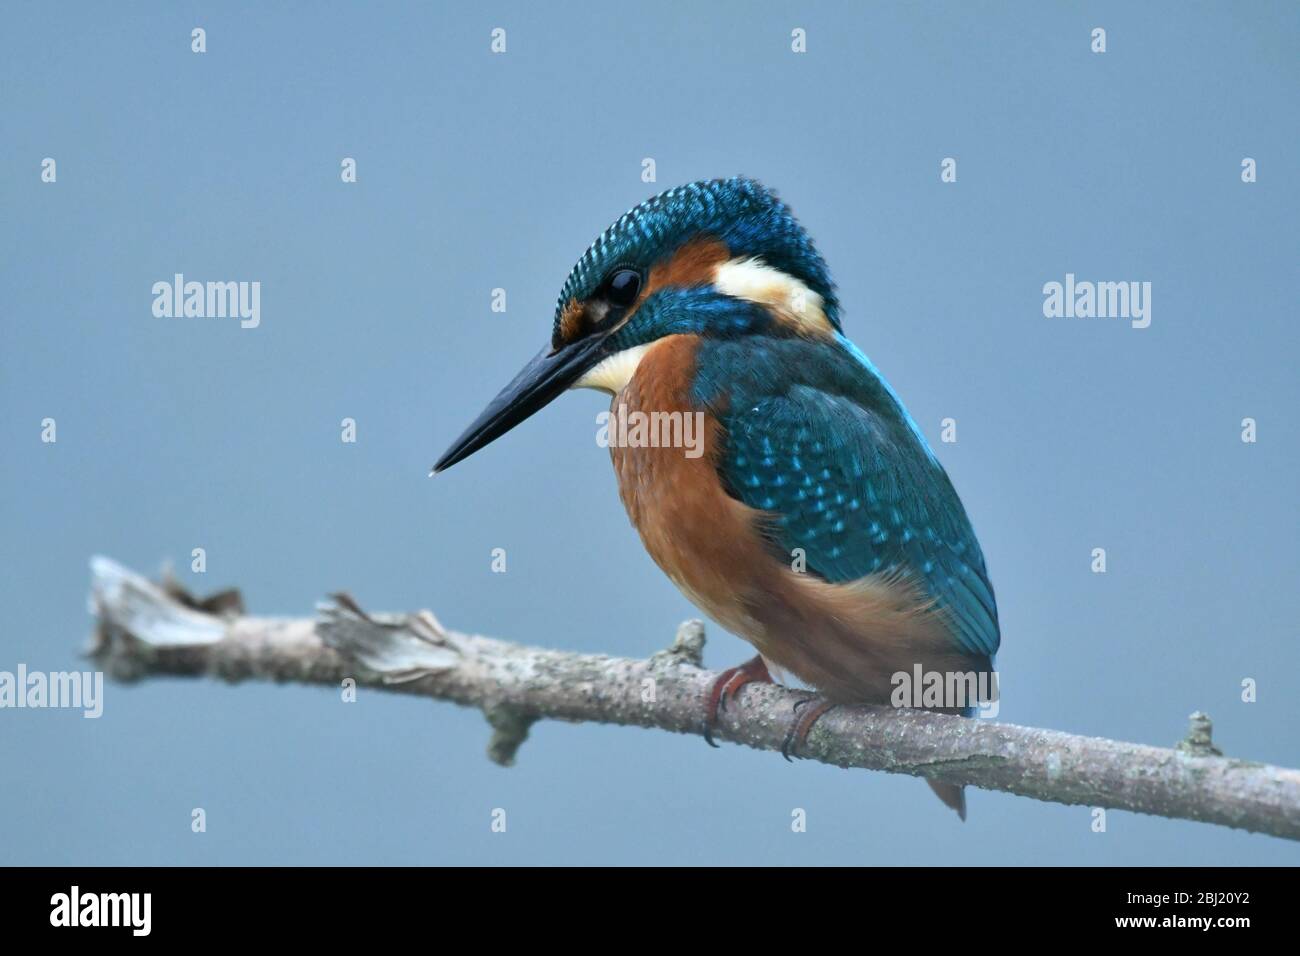 El Kingfisher europeo encaramado en el árbol Foto de stock